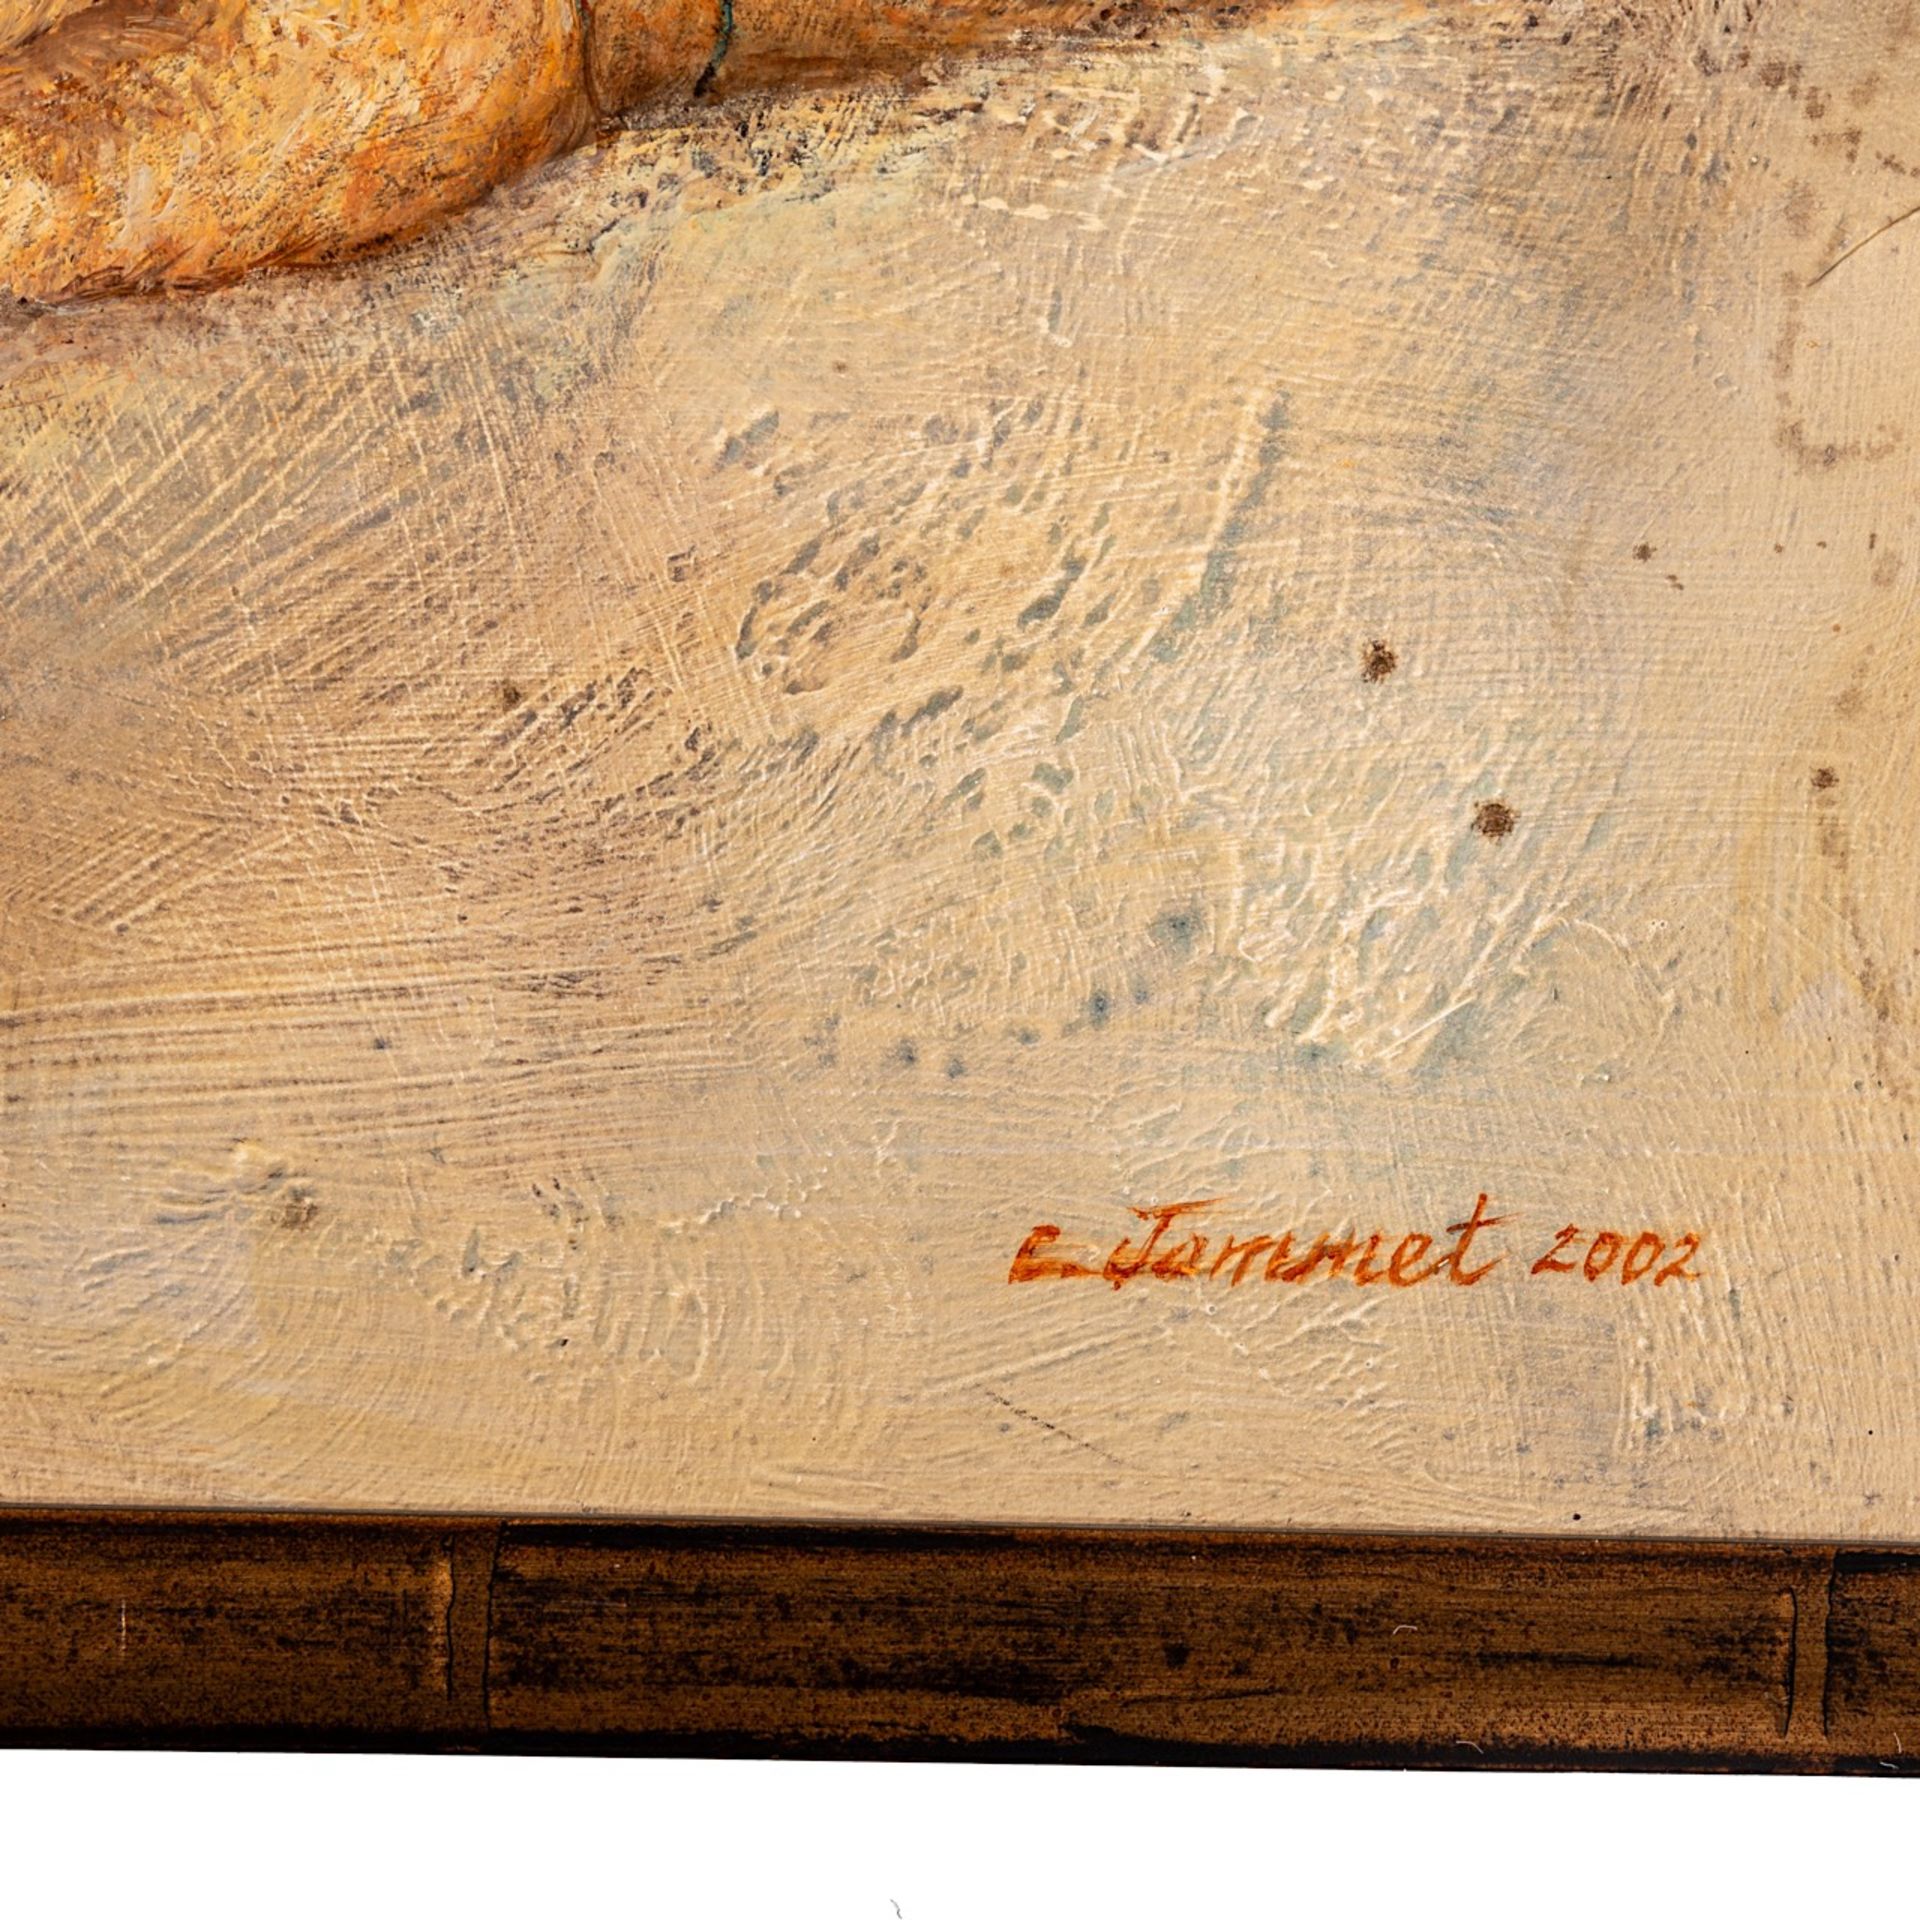 Claude Jammet (1953), three untitled works, 2002, oil on canvas, 88 x 66 / 70 x 90 / 66 x 100 cm - Bild 13 aus 13